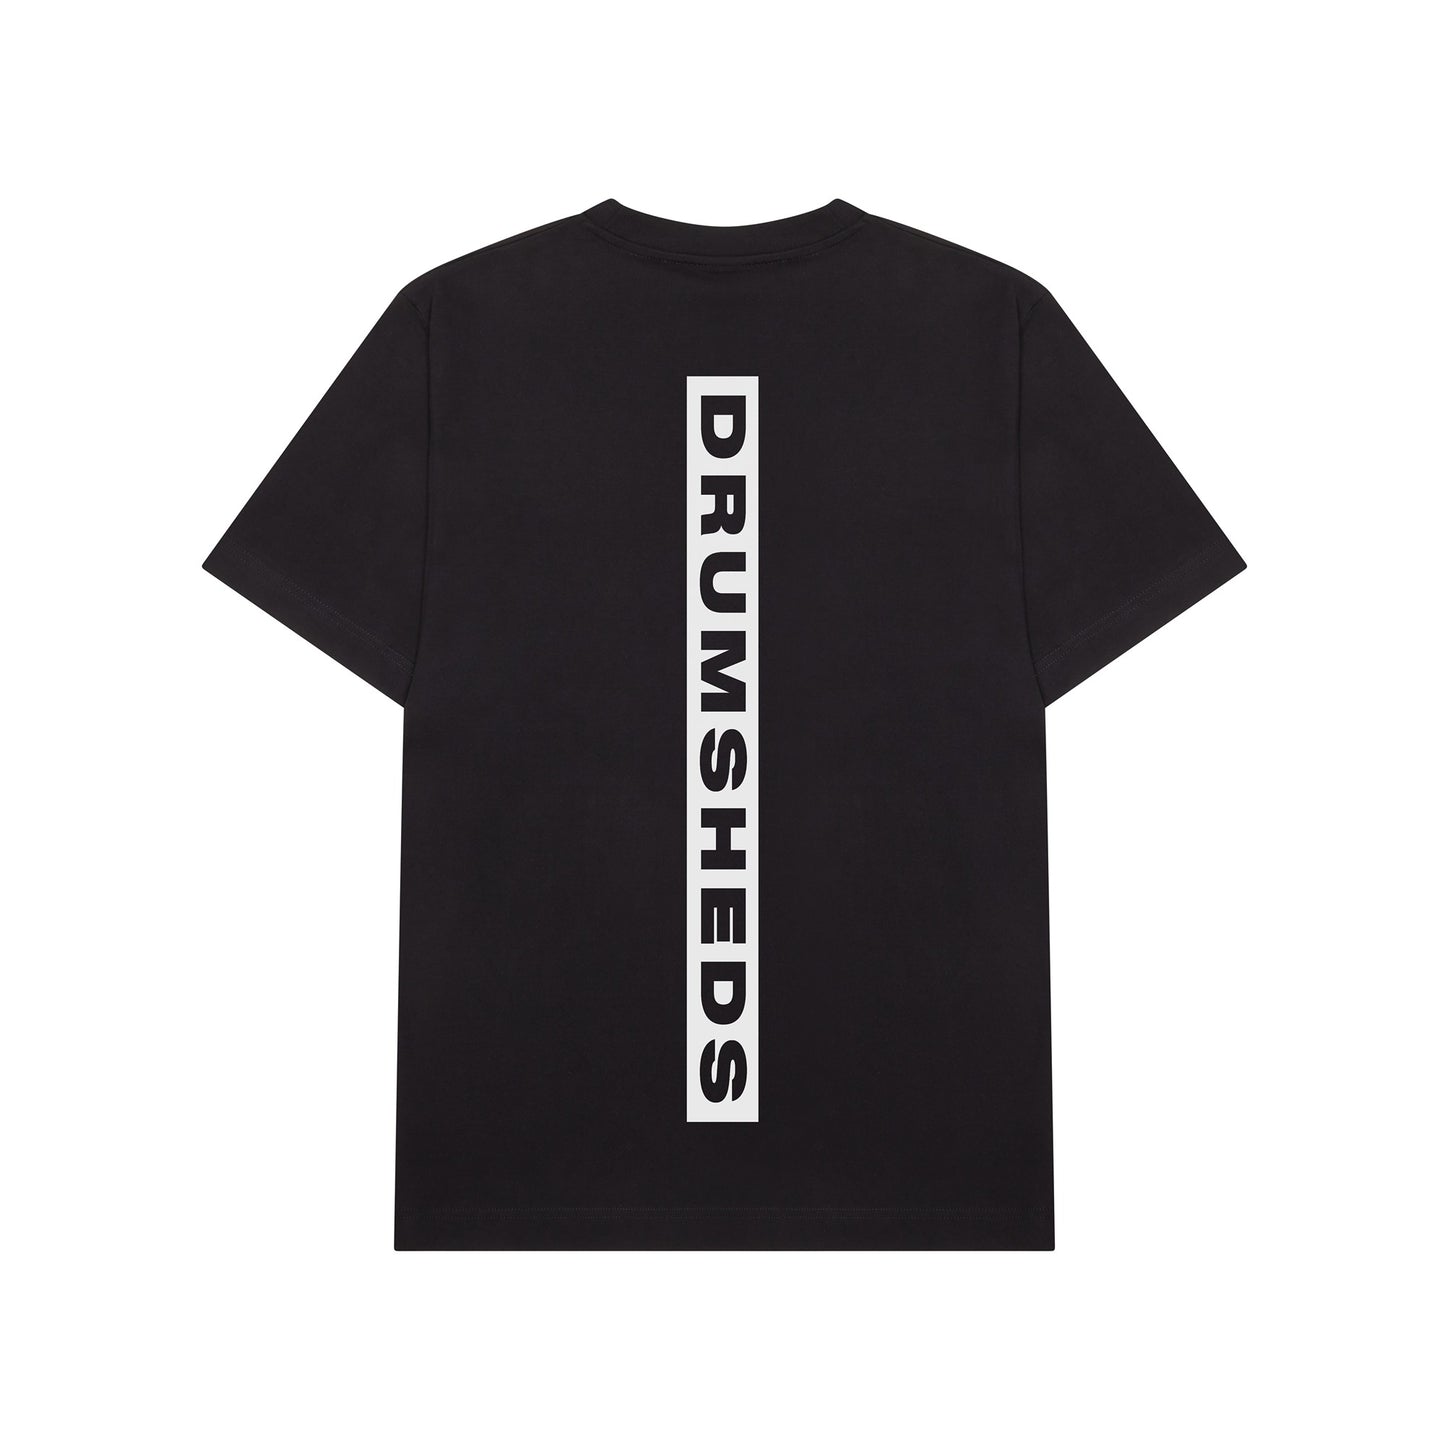 Drumsheds Essential T-shirt Black